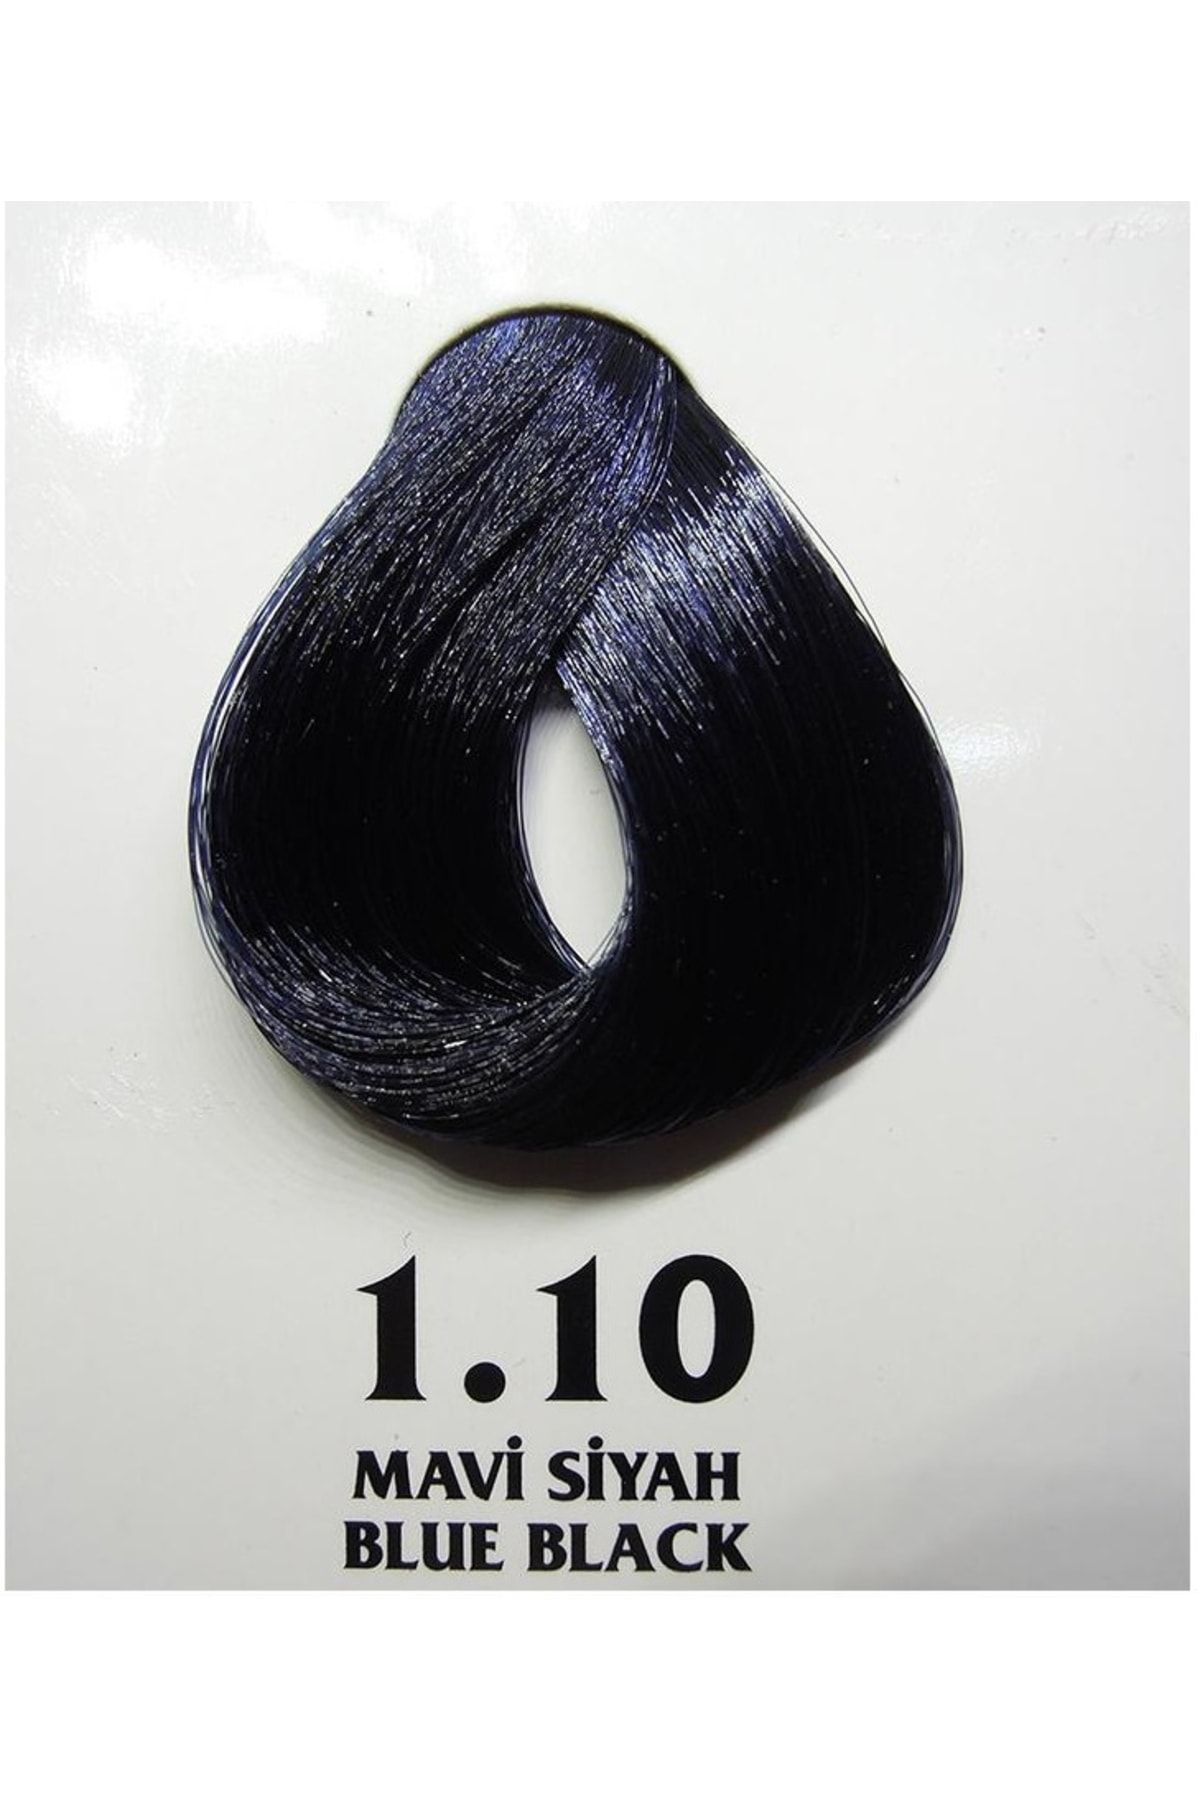 Clemency Farmavita Saç Boyası Mavi Siyah 1.10 60 Gr